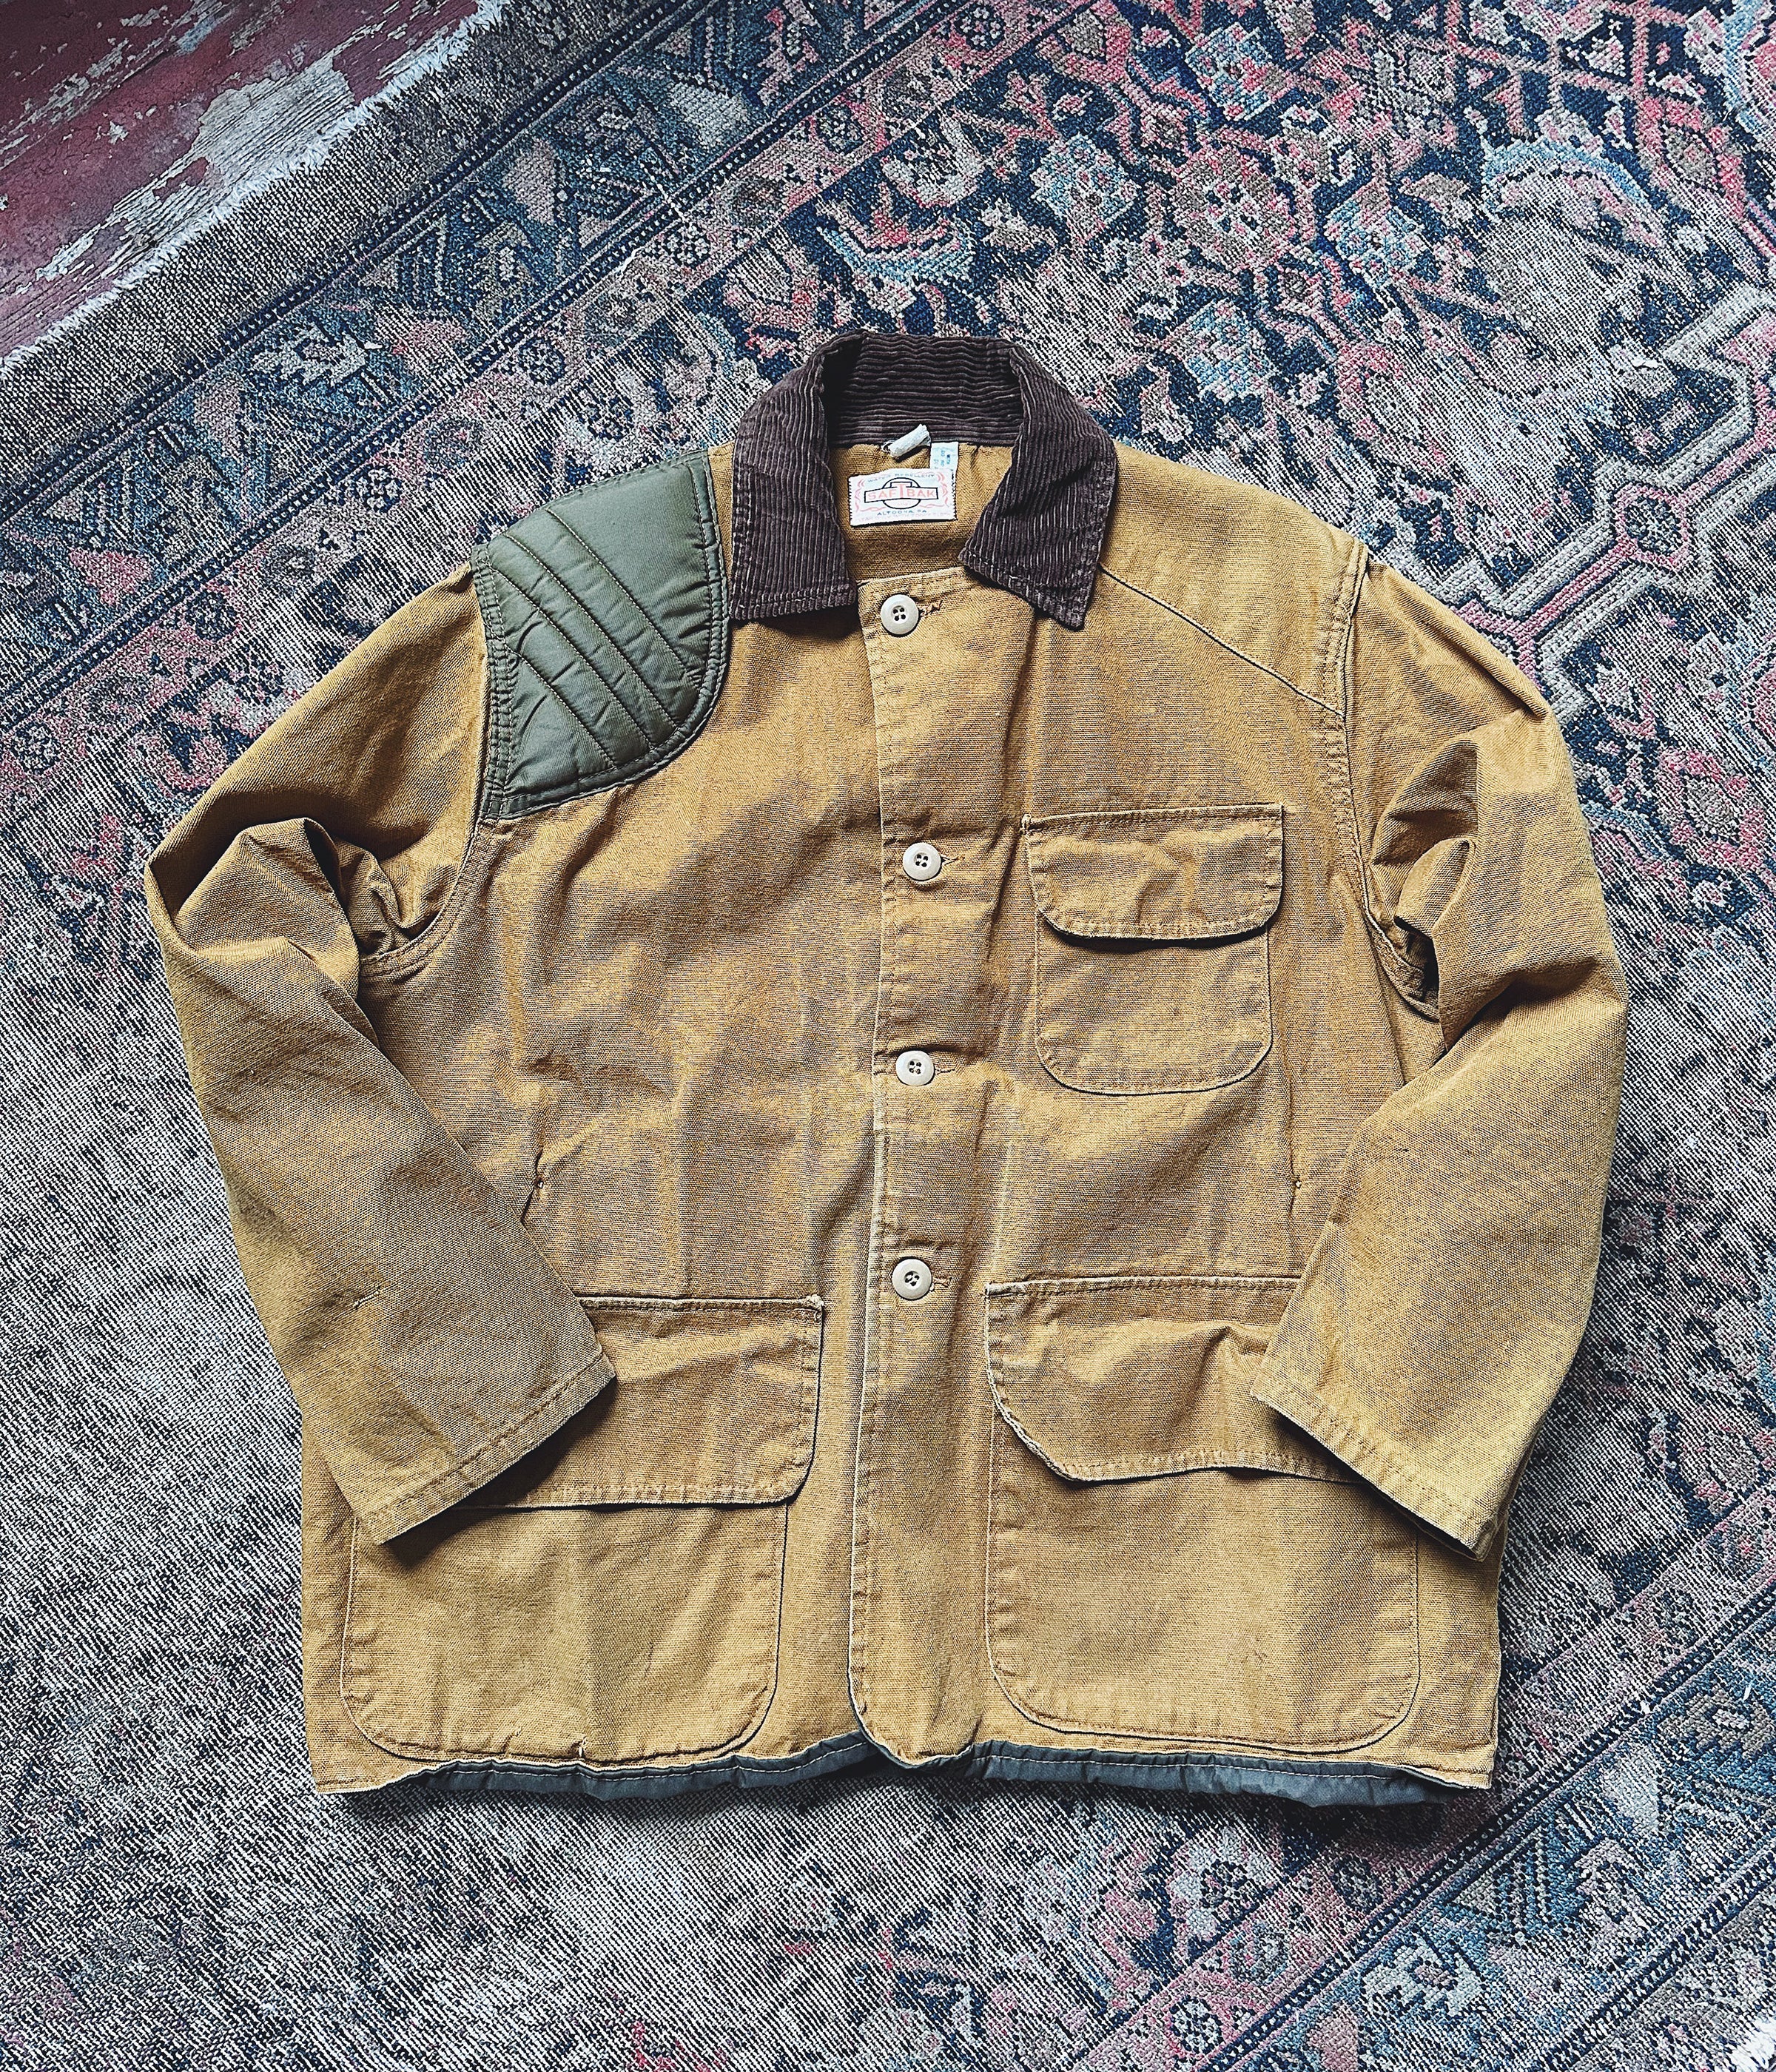 Vintage Saftbak Hunting Jacket